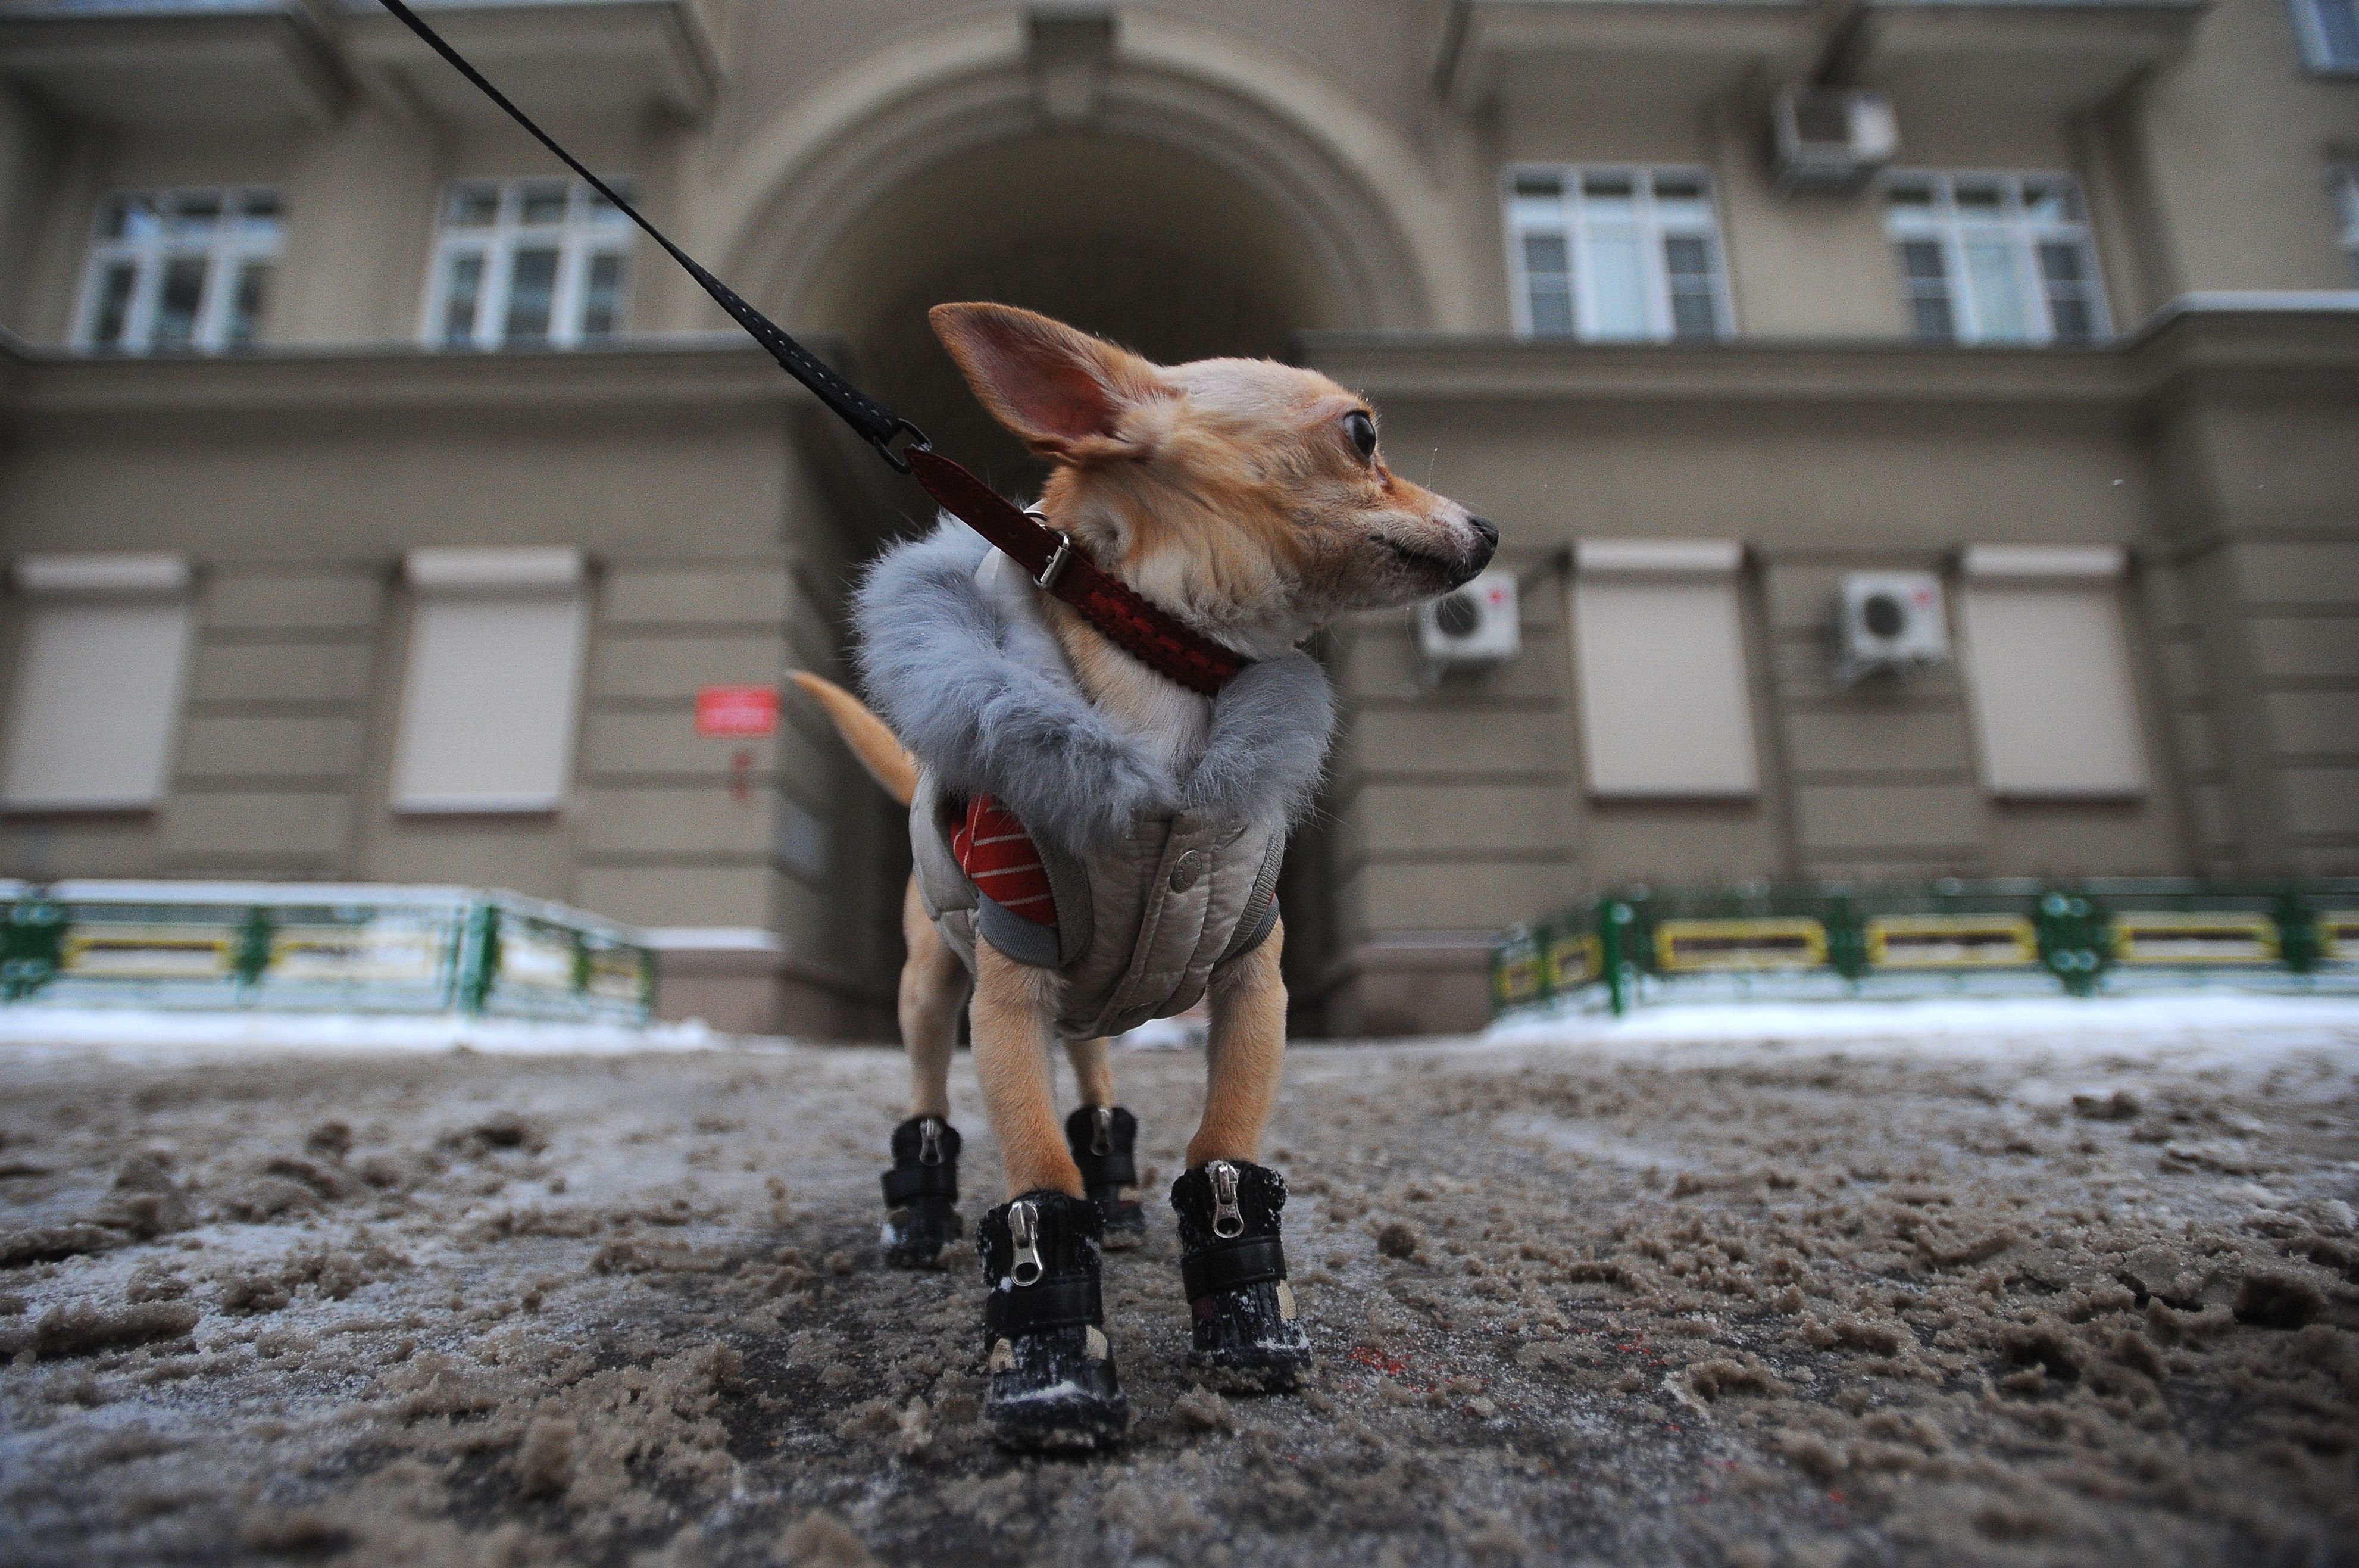 20 февраля 2018 года. Маленьким собачкам, таким, как этот чихуа-хуа, покупают не только одежду, но и специальную собачью зимнюю обувь. Маленькие черные ботиночки защищают лапки и от холода, и от грязи. Фото: Максим Новиков/ ТАСС